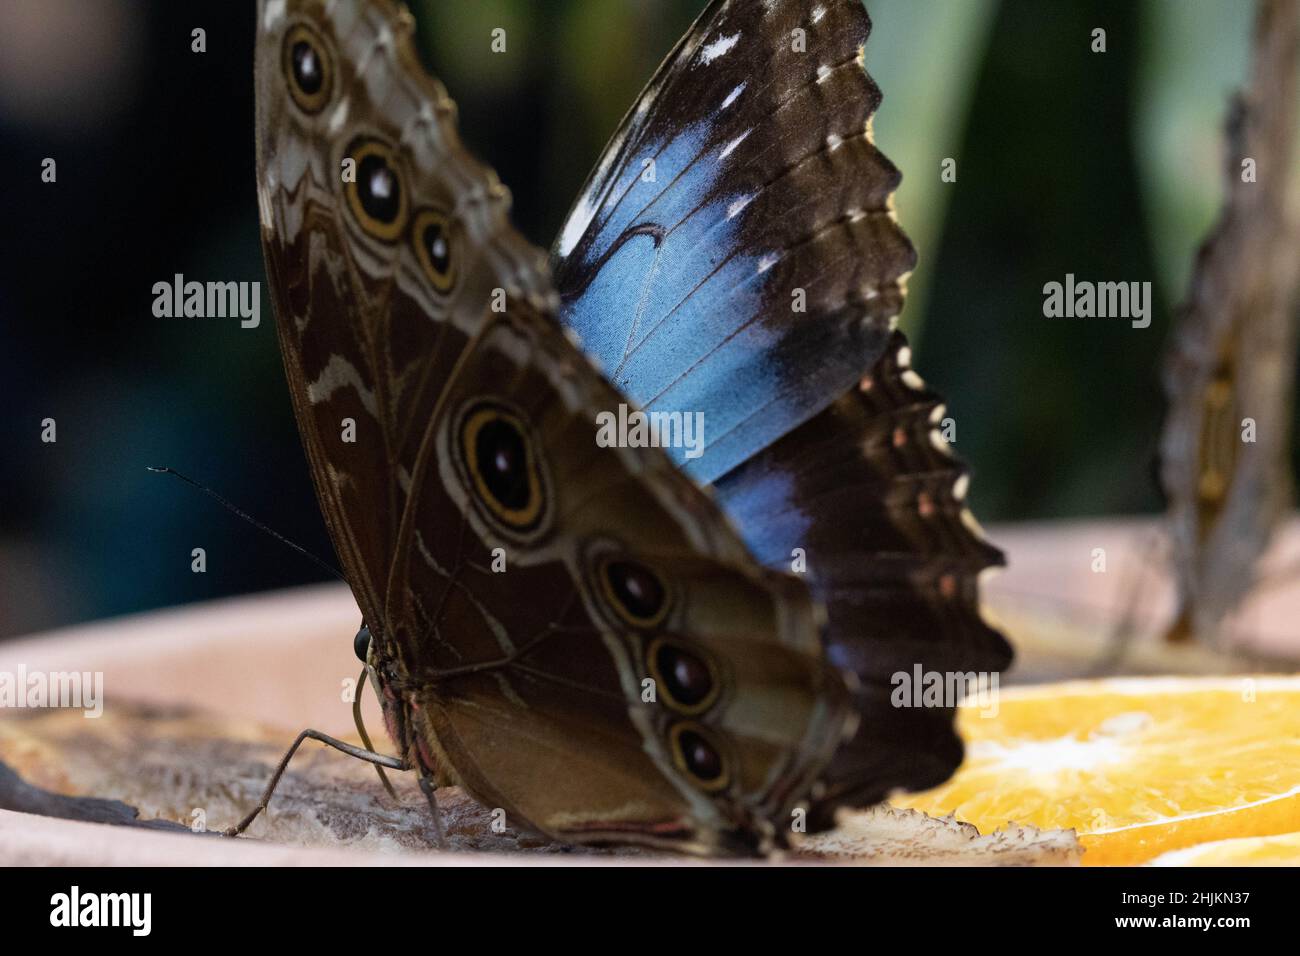 Nahaufnahme eines Schmetterlings (Blauer Morphofalter) von schräg hinten mit Ansicht des Flügels von Innen und Außen. Stock Photo